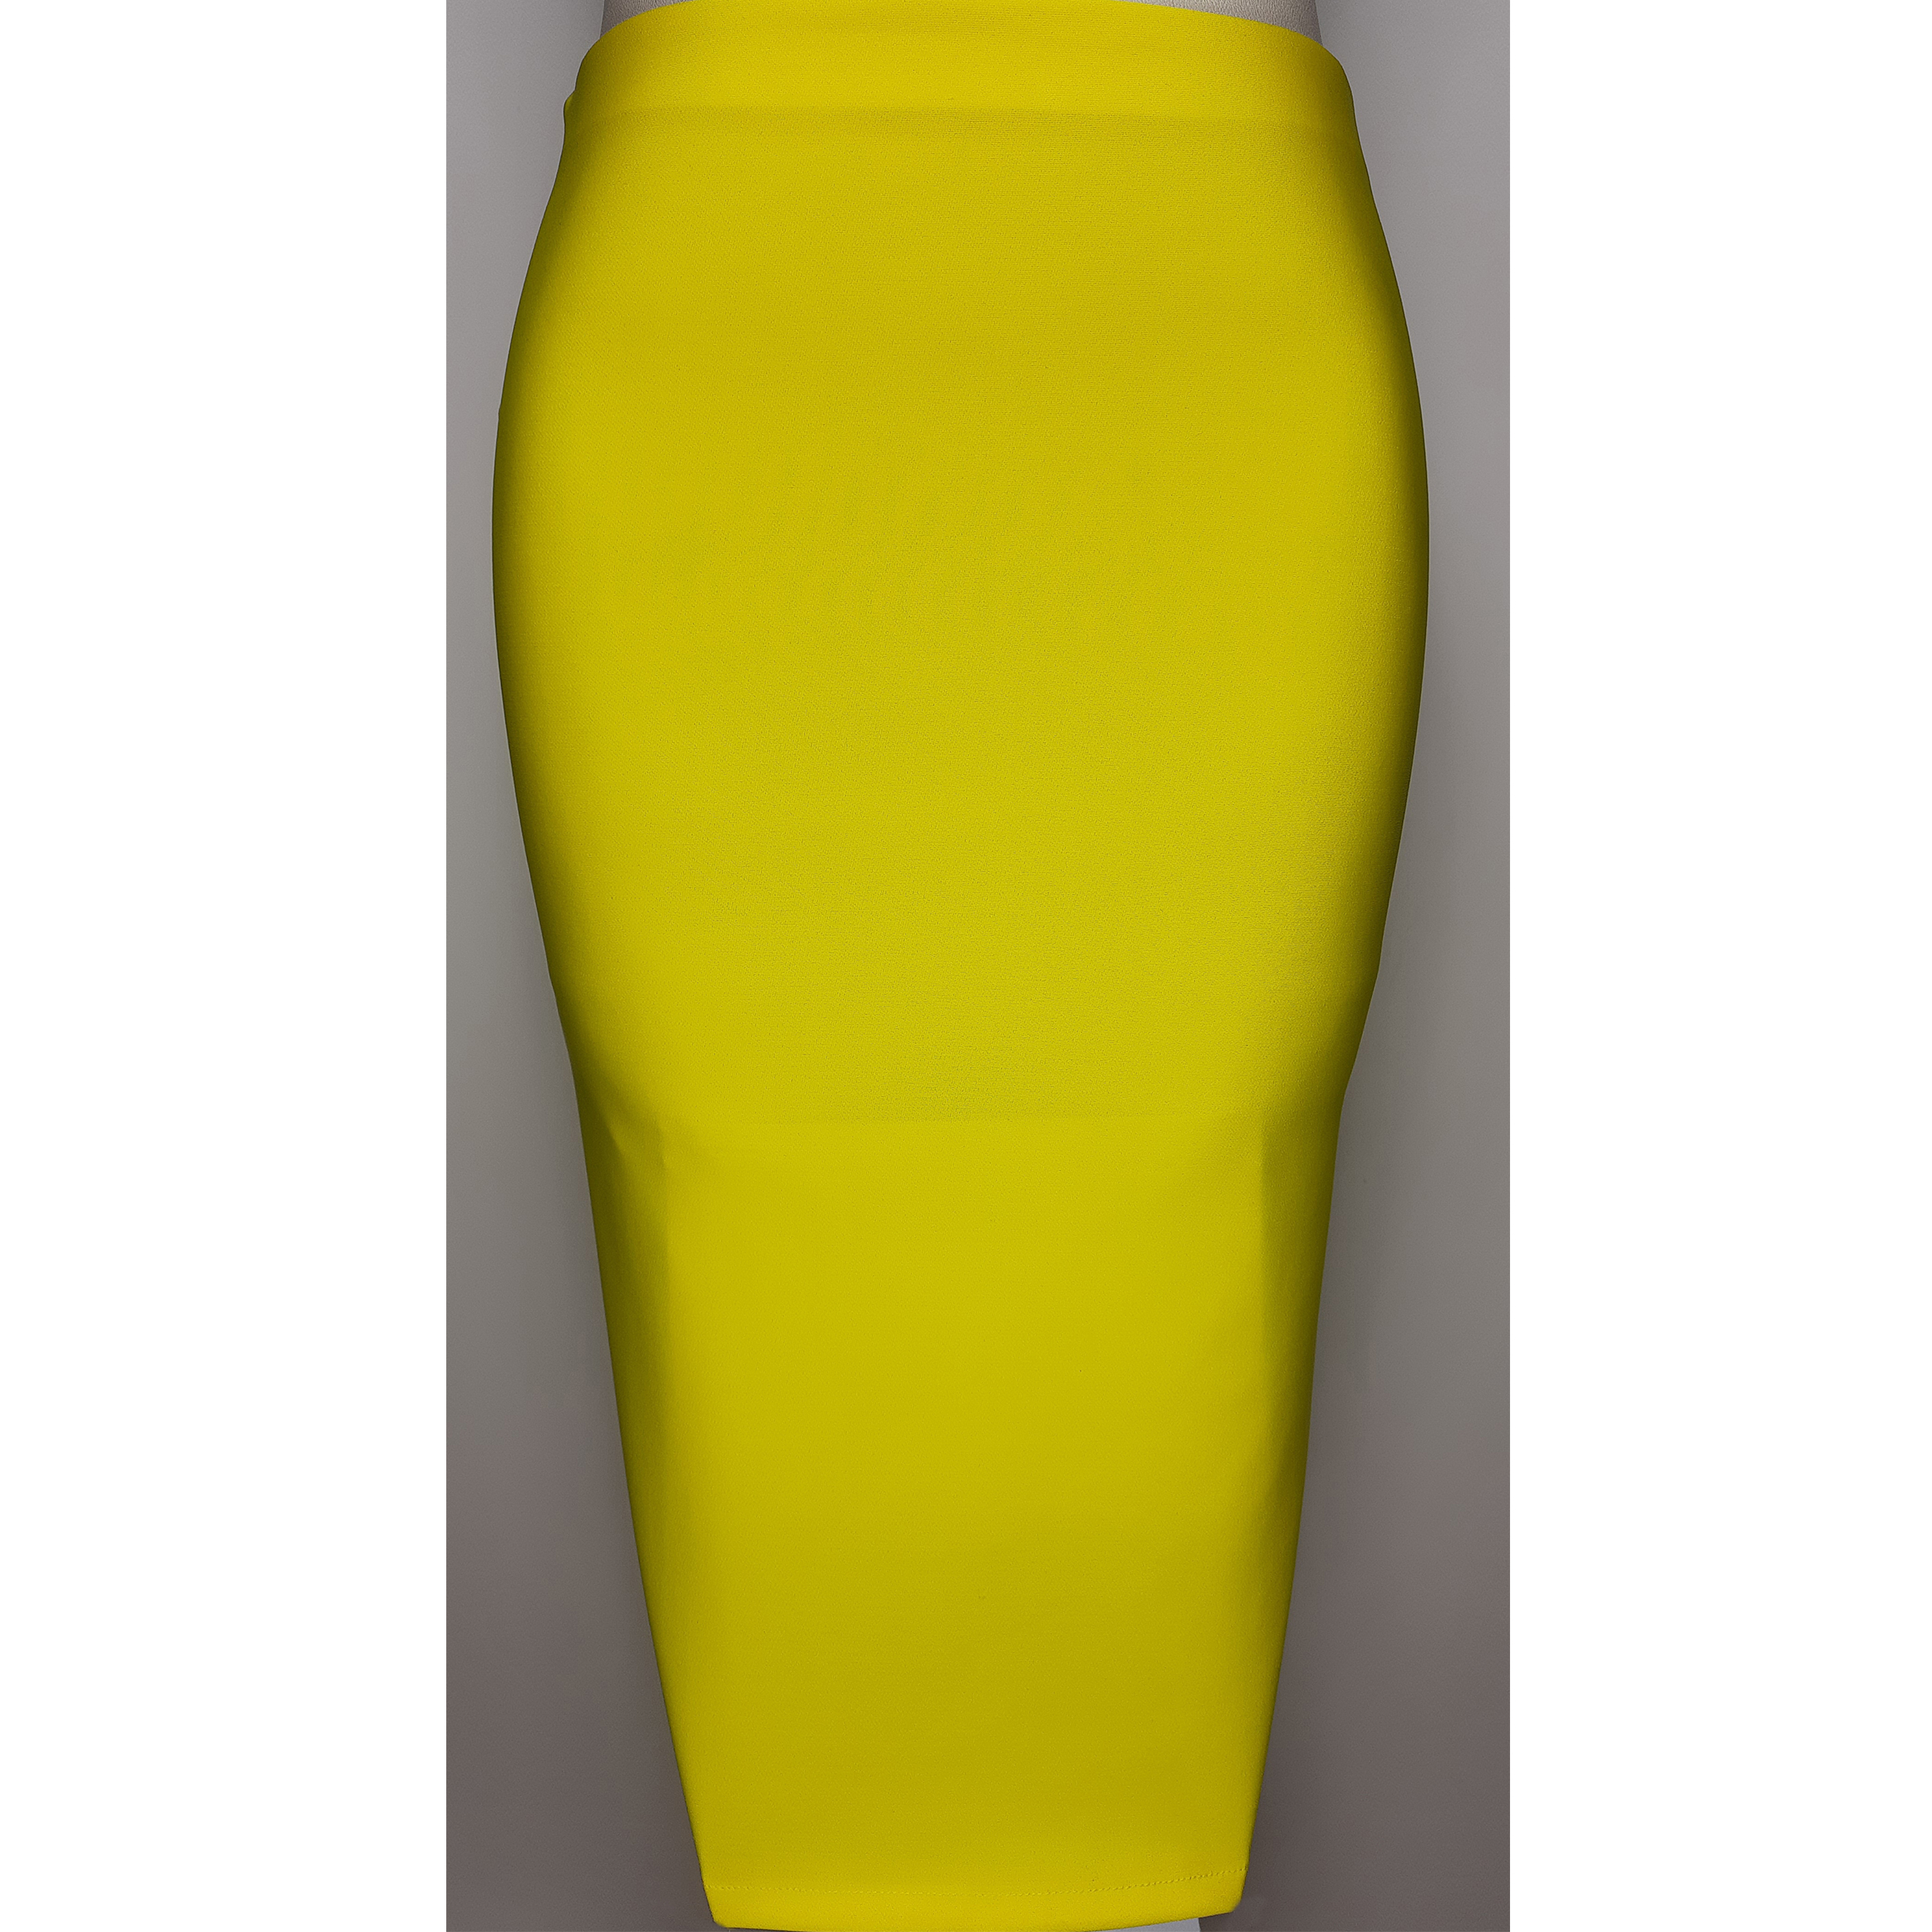 دامن زنانه مدل Dfc002y رنگ زرد -  - 2